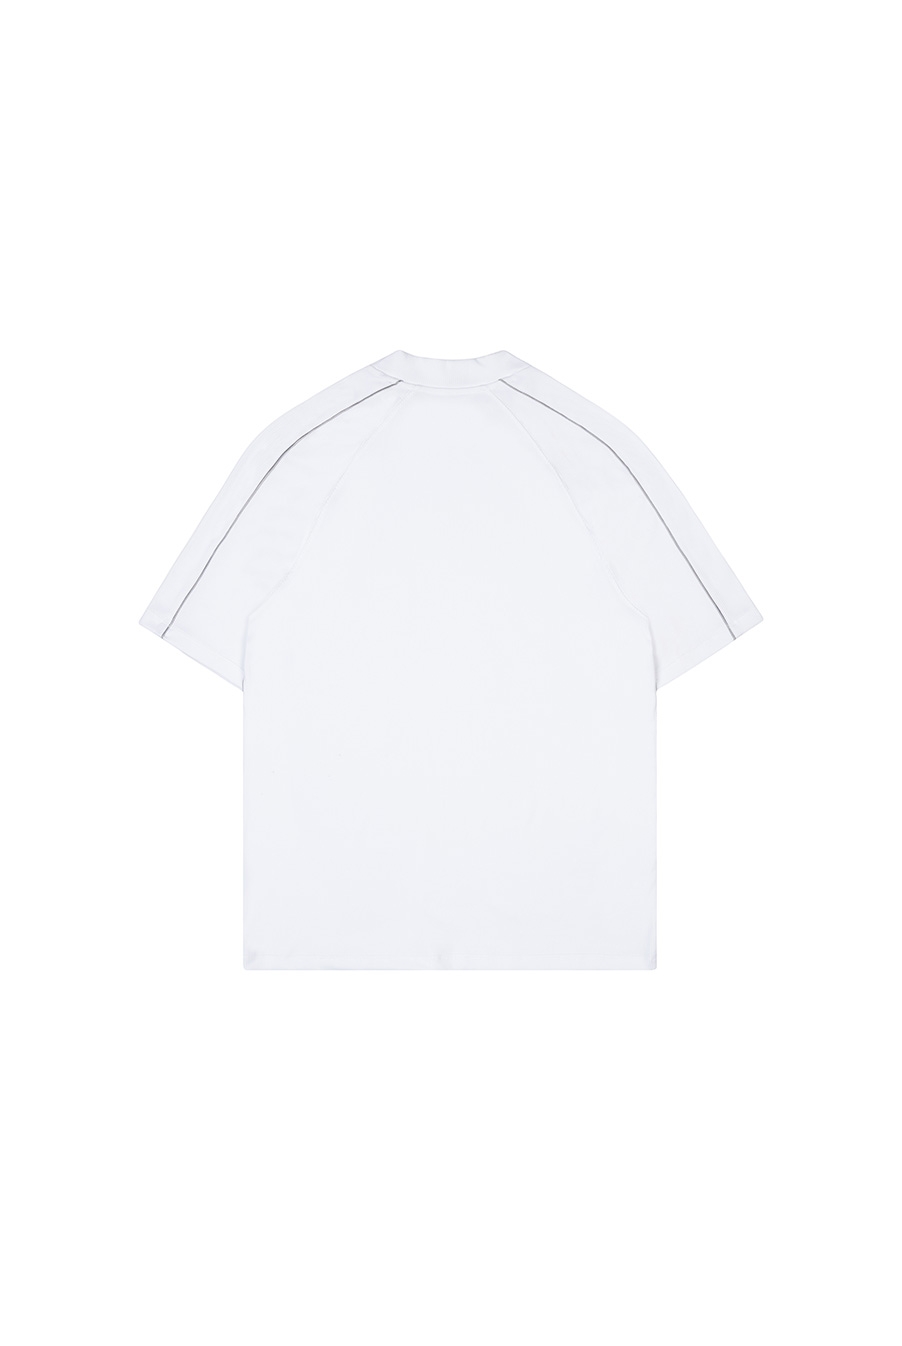 Piping Metal Logo T-shirt (White)